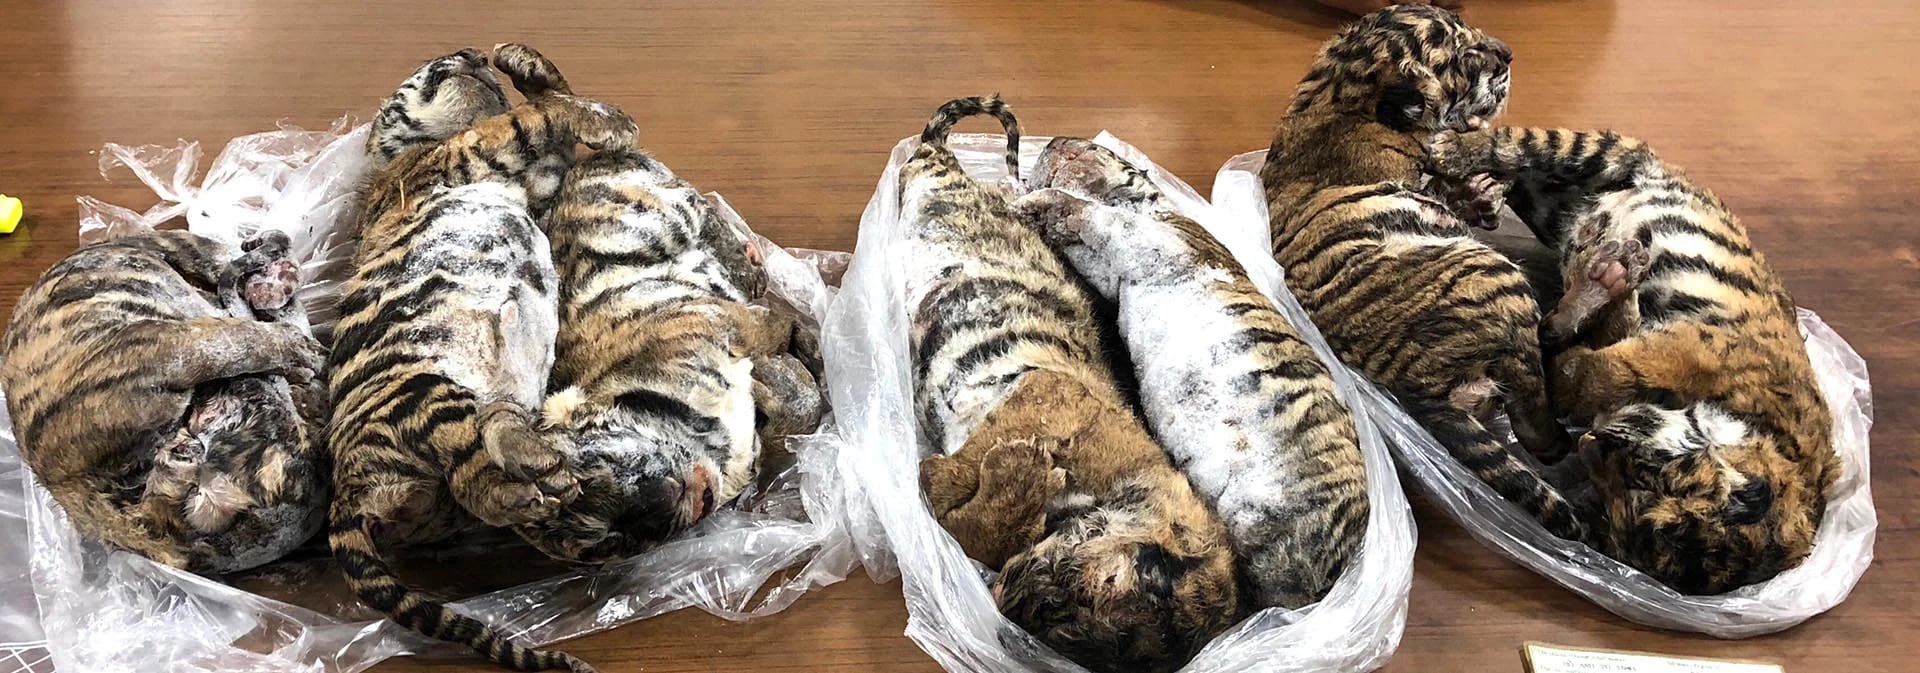 La medicina tradicional vietnamita y la industria de la joyería utilizan algunas partes del tigre, cuya población disminuyó enormemente en ese país. (Photo by Nam GIANG / AFP)